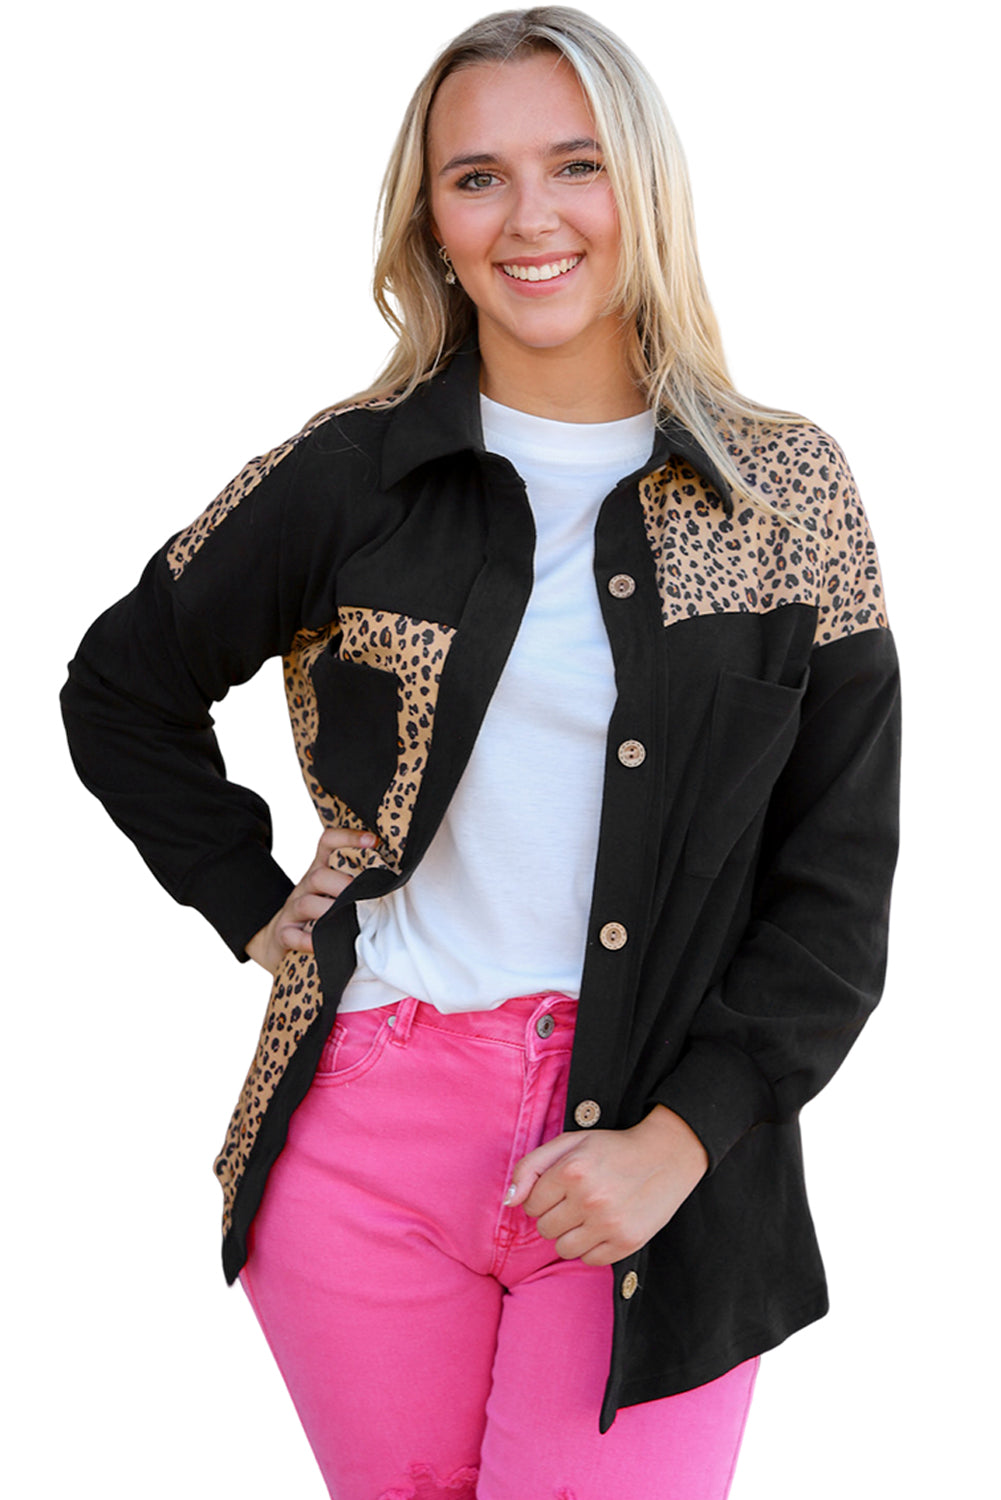 Crna jakna s uzorkom leoparda